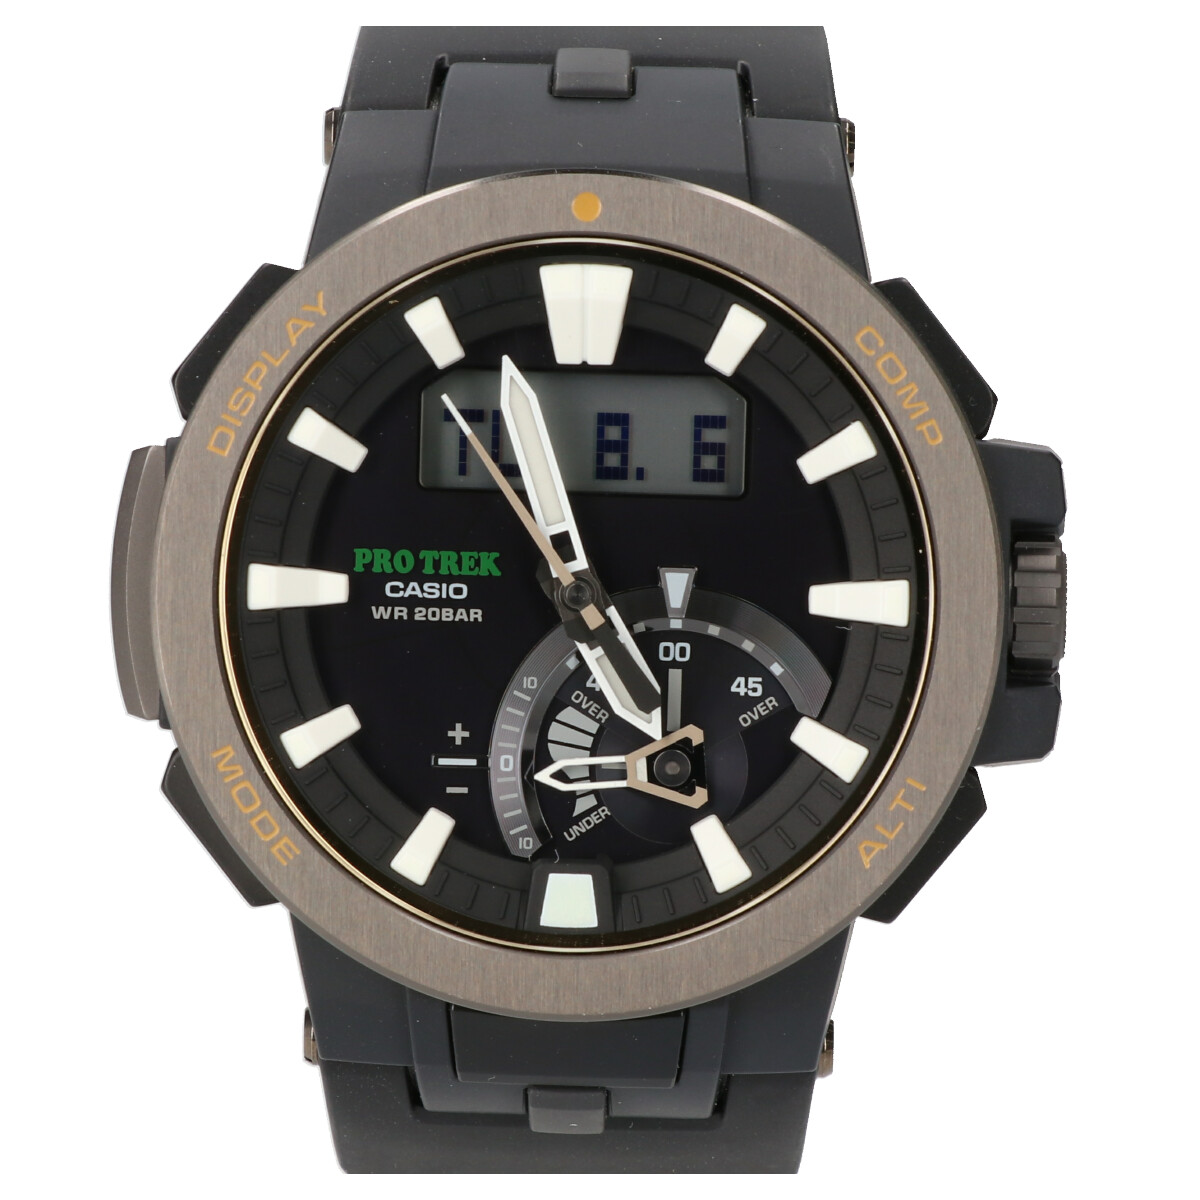 エコスタイル銀座本店で美品のカシオのプロトレックのブラック系のPRW-7000-1B腕時計を買取りました。 買取価格・実績 2020年2月3日